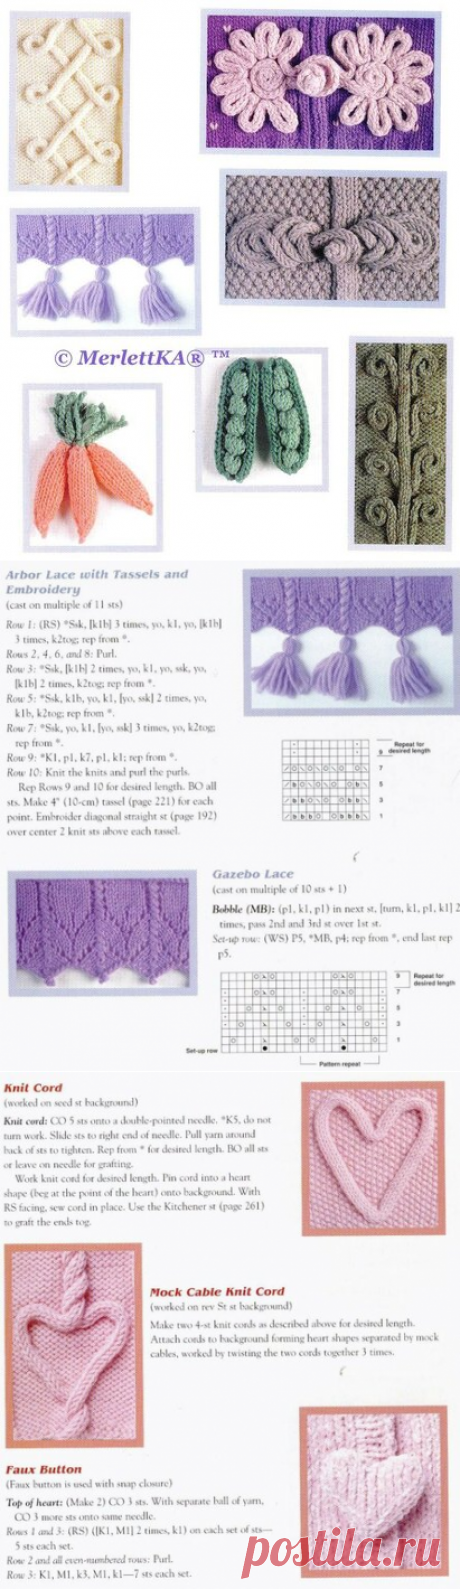 350 способов украсить вязаное изделие - вяжем, вышиваем, плетём.